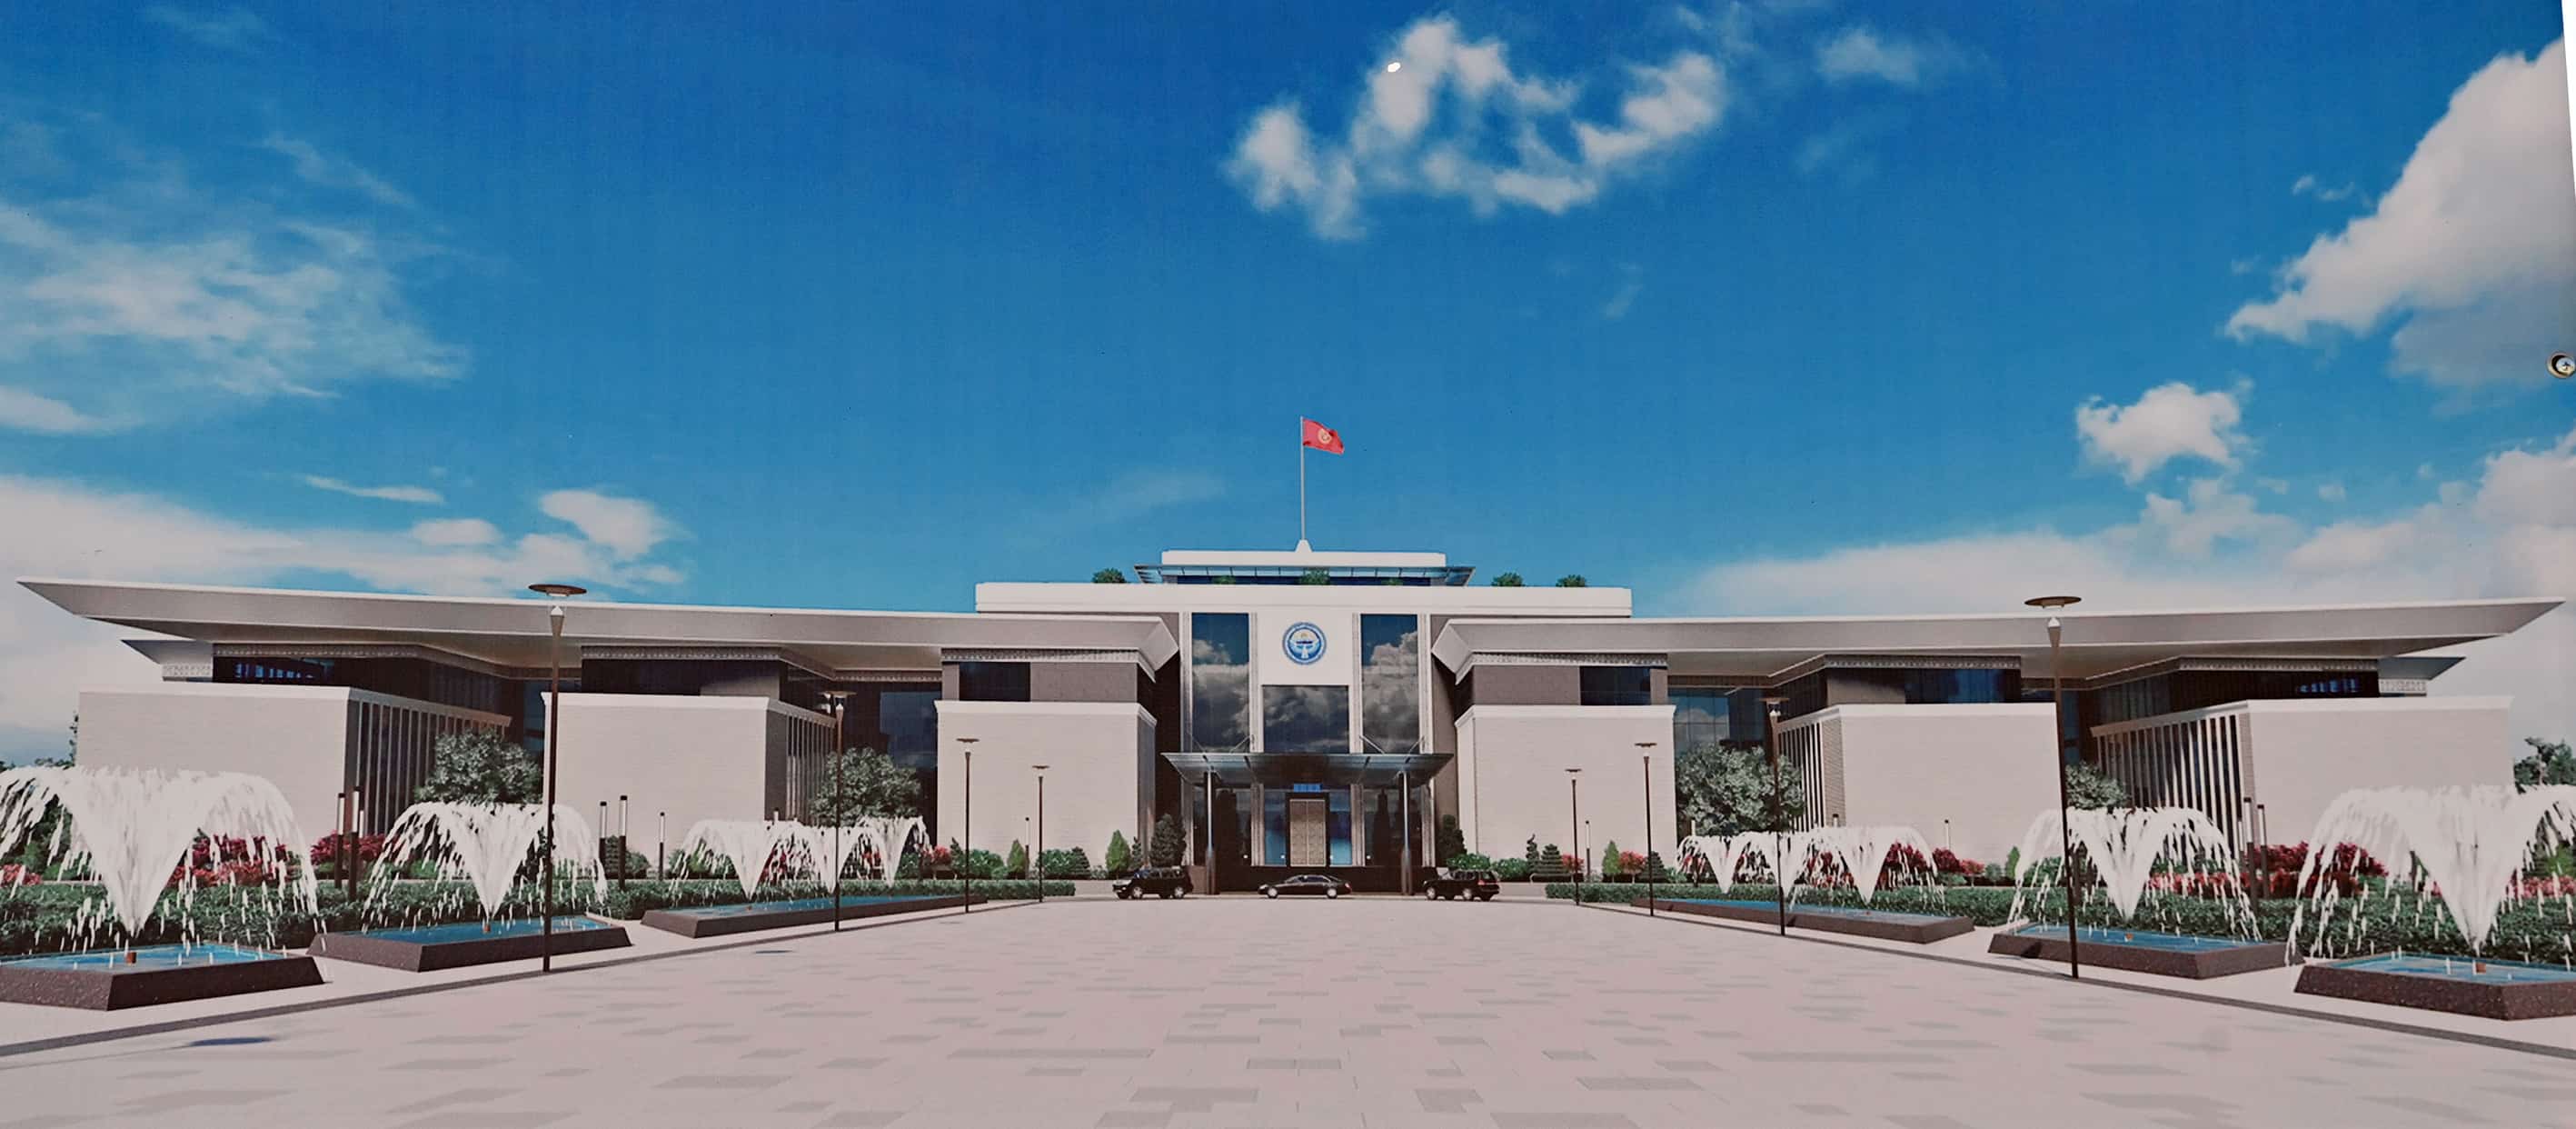 Проект строительства нового здания Администрации президента передали «Кыргызстройсервису»